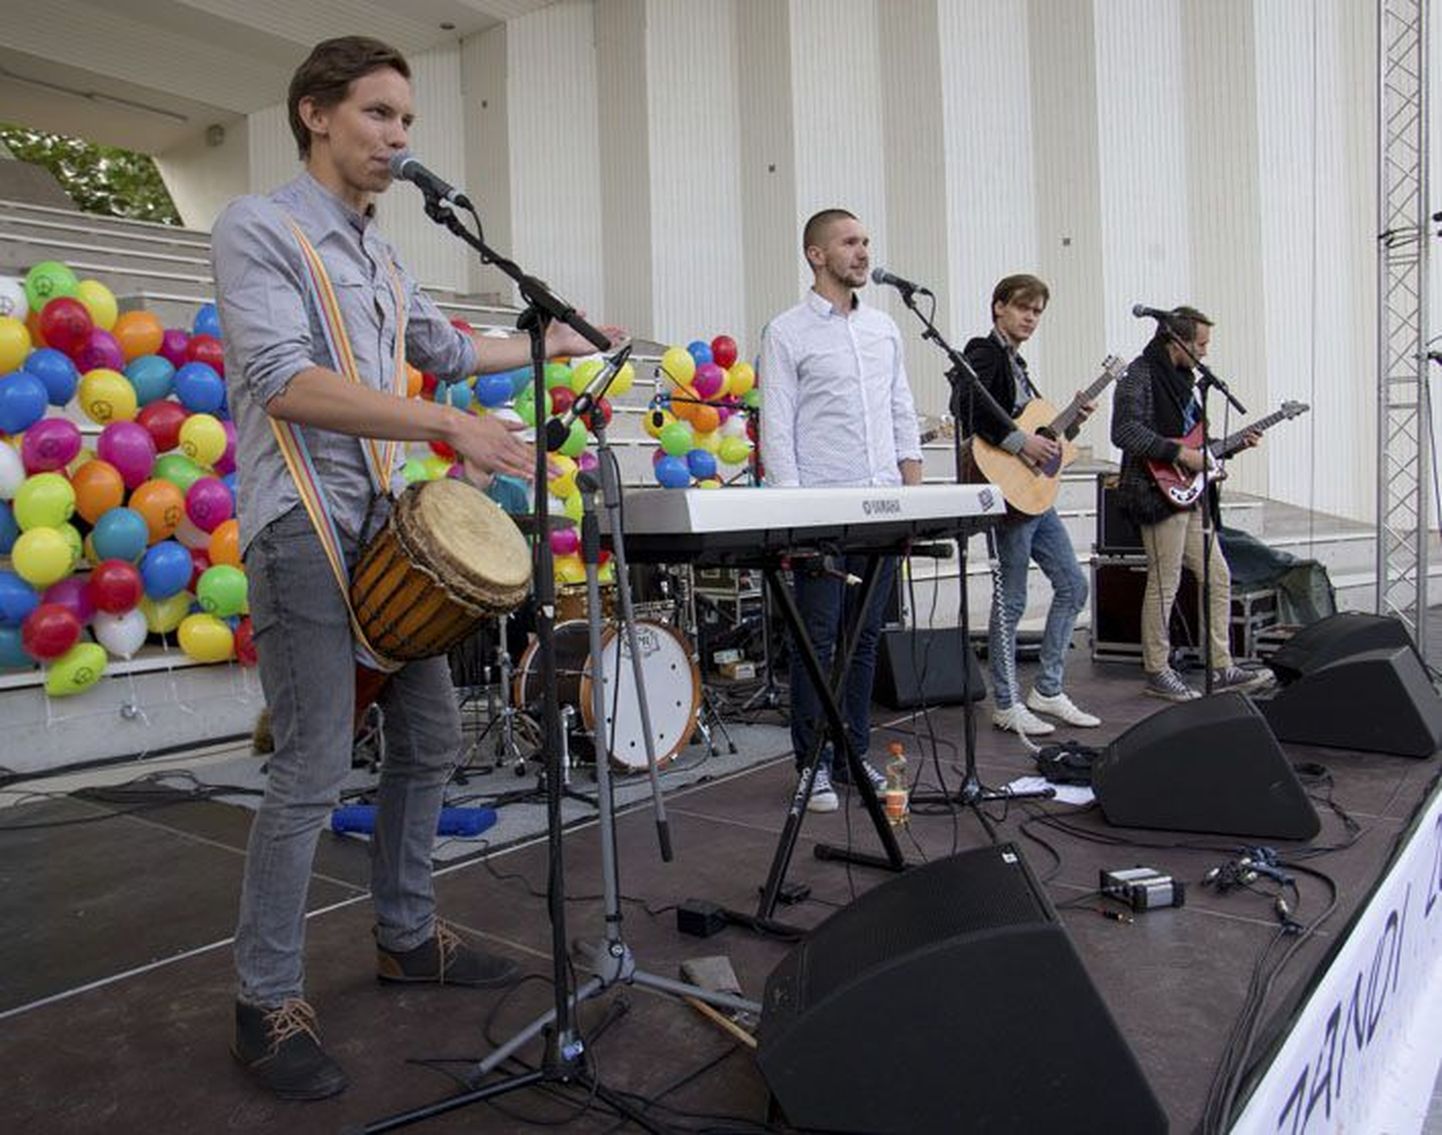 Ukerdajad esinesid tänavu 1. septembril koolirahu väljakuulutamisel Viljandis. Muusikutest-näitlejatest koosneva bändi esinemiskava on tihe.